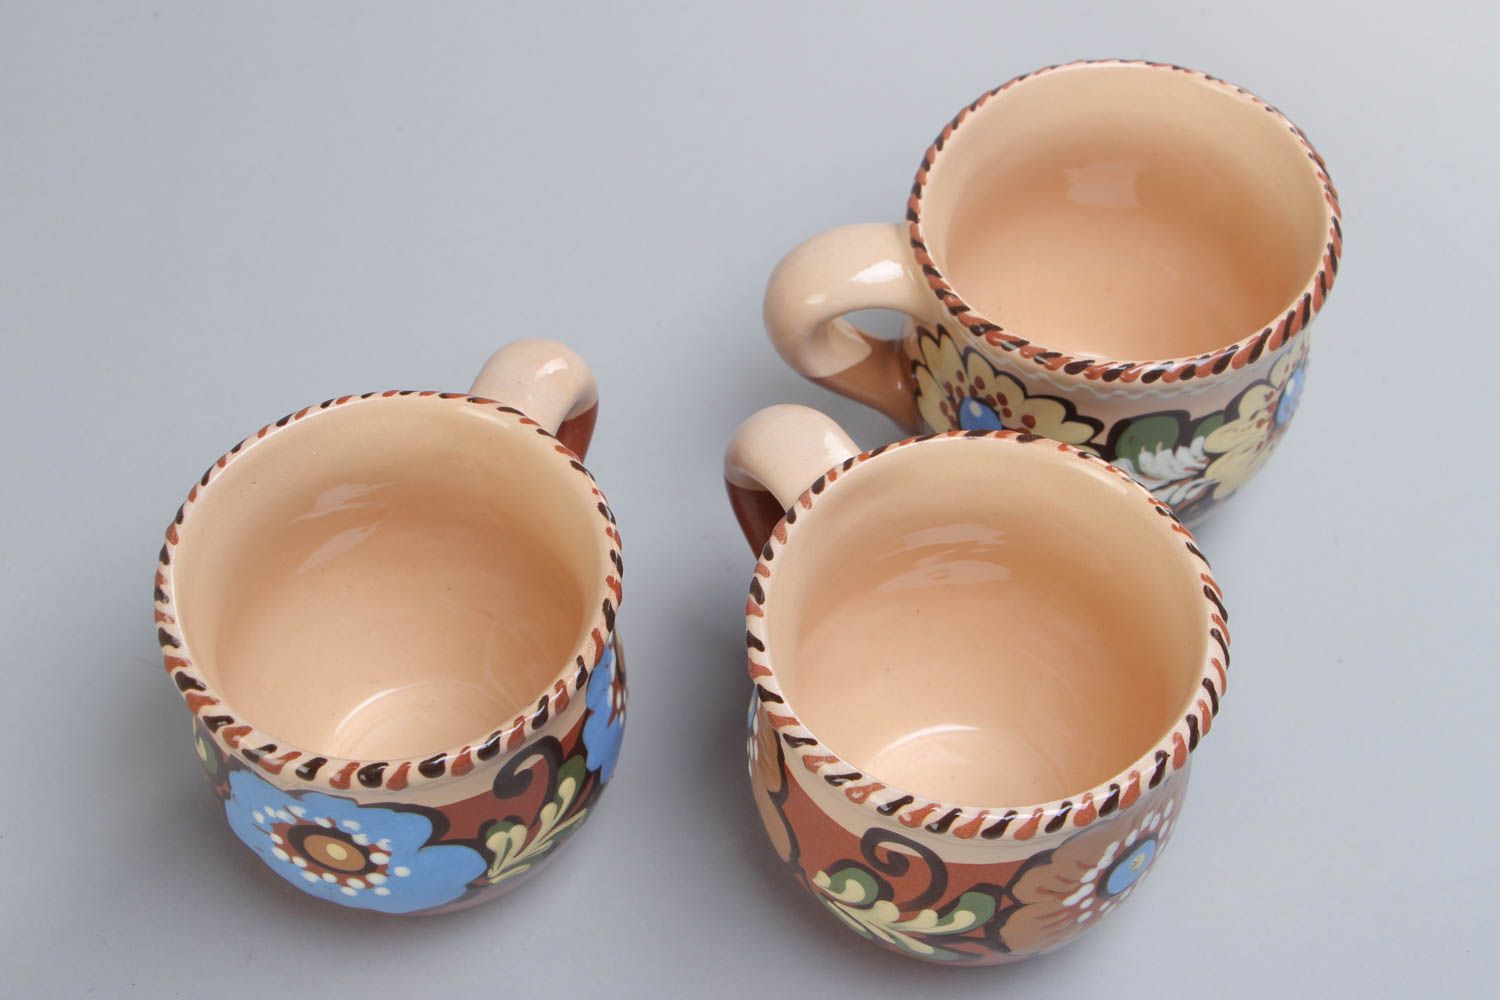 Juego de tazas artesanales de cerámica pintadas con barniz multicolor 3 piezas por 250 ml foto 3